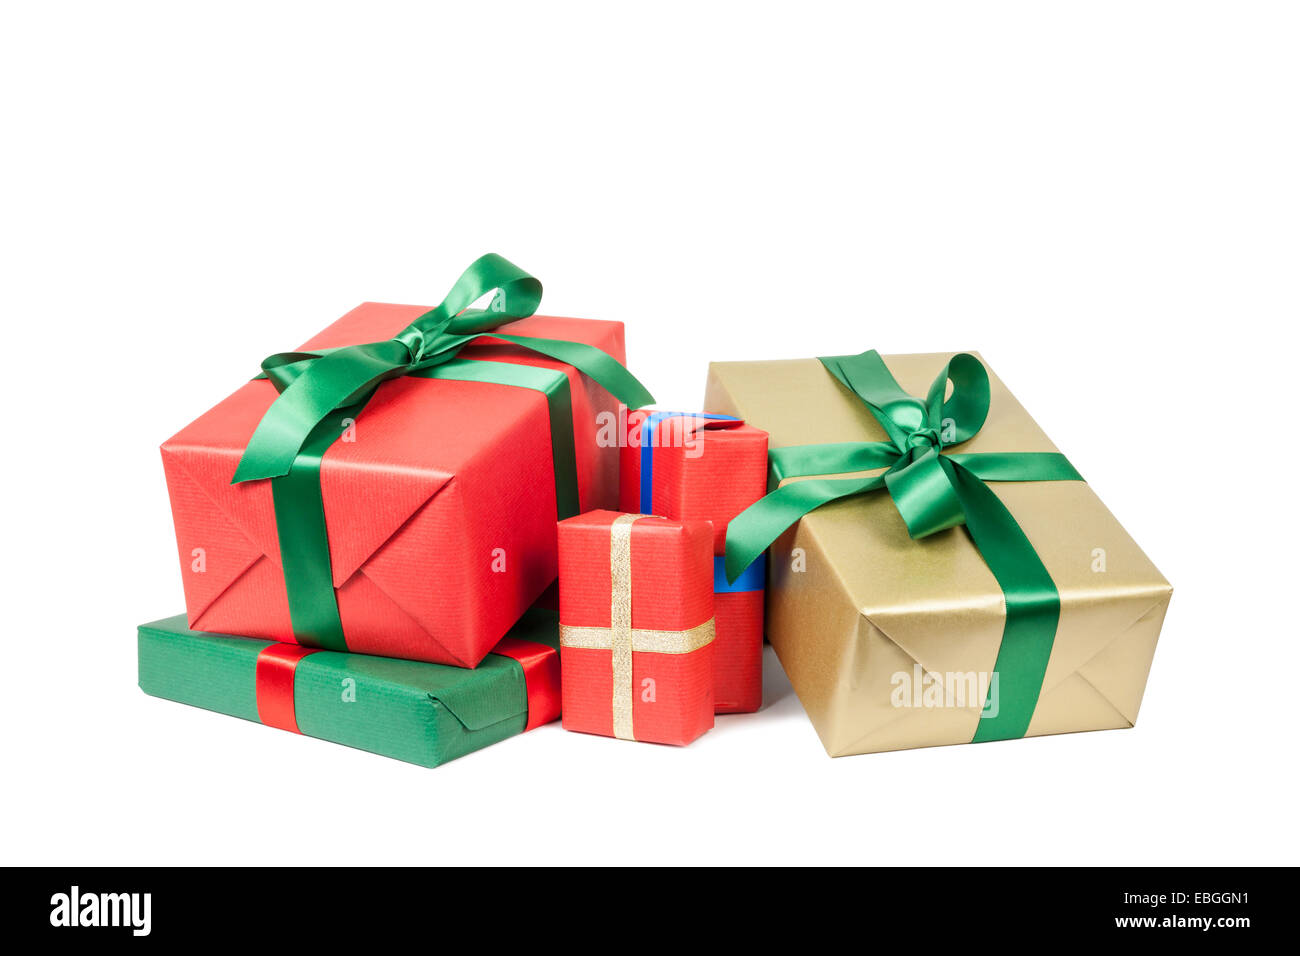 Giáng sinh thật tuyệt vời khi có những món quà đầy ý nghĩa và đẹp mắt để trao tặng người thân và bạn bè. Hãy để hộp quà giáng sinh trên nền trắng thể hiện sự quan tâm và yêu thương của bạn dành cho những người mình yêu thương. Xem ngay hình ảnh để cùng nhấn mạnh ý nghĩa của những món quà này!